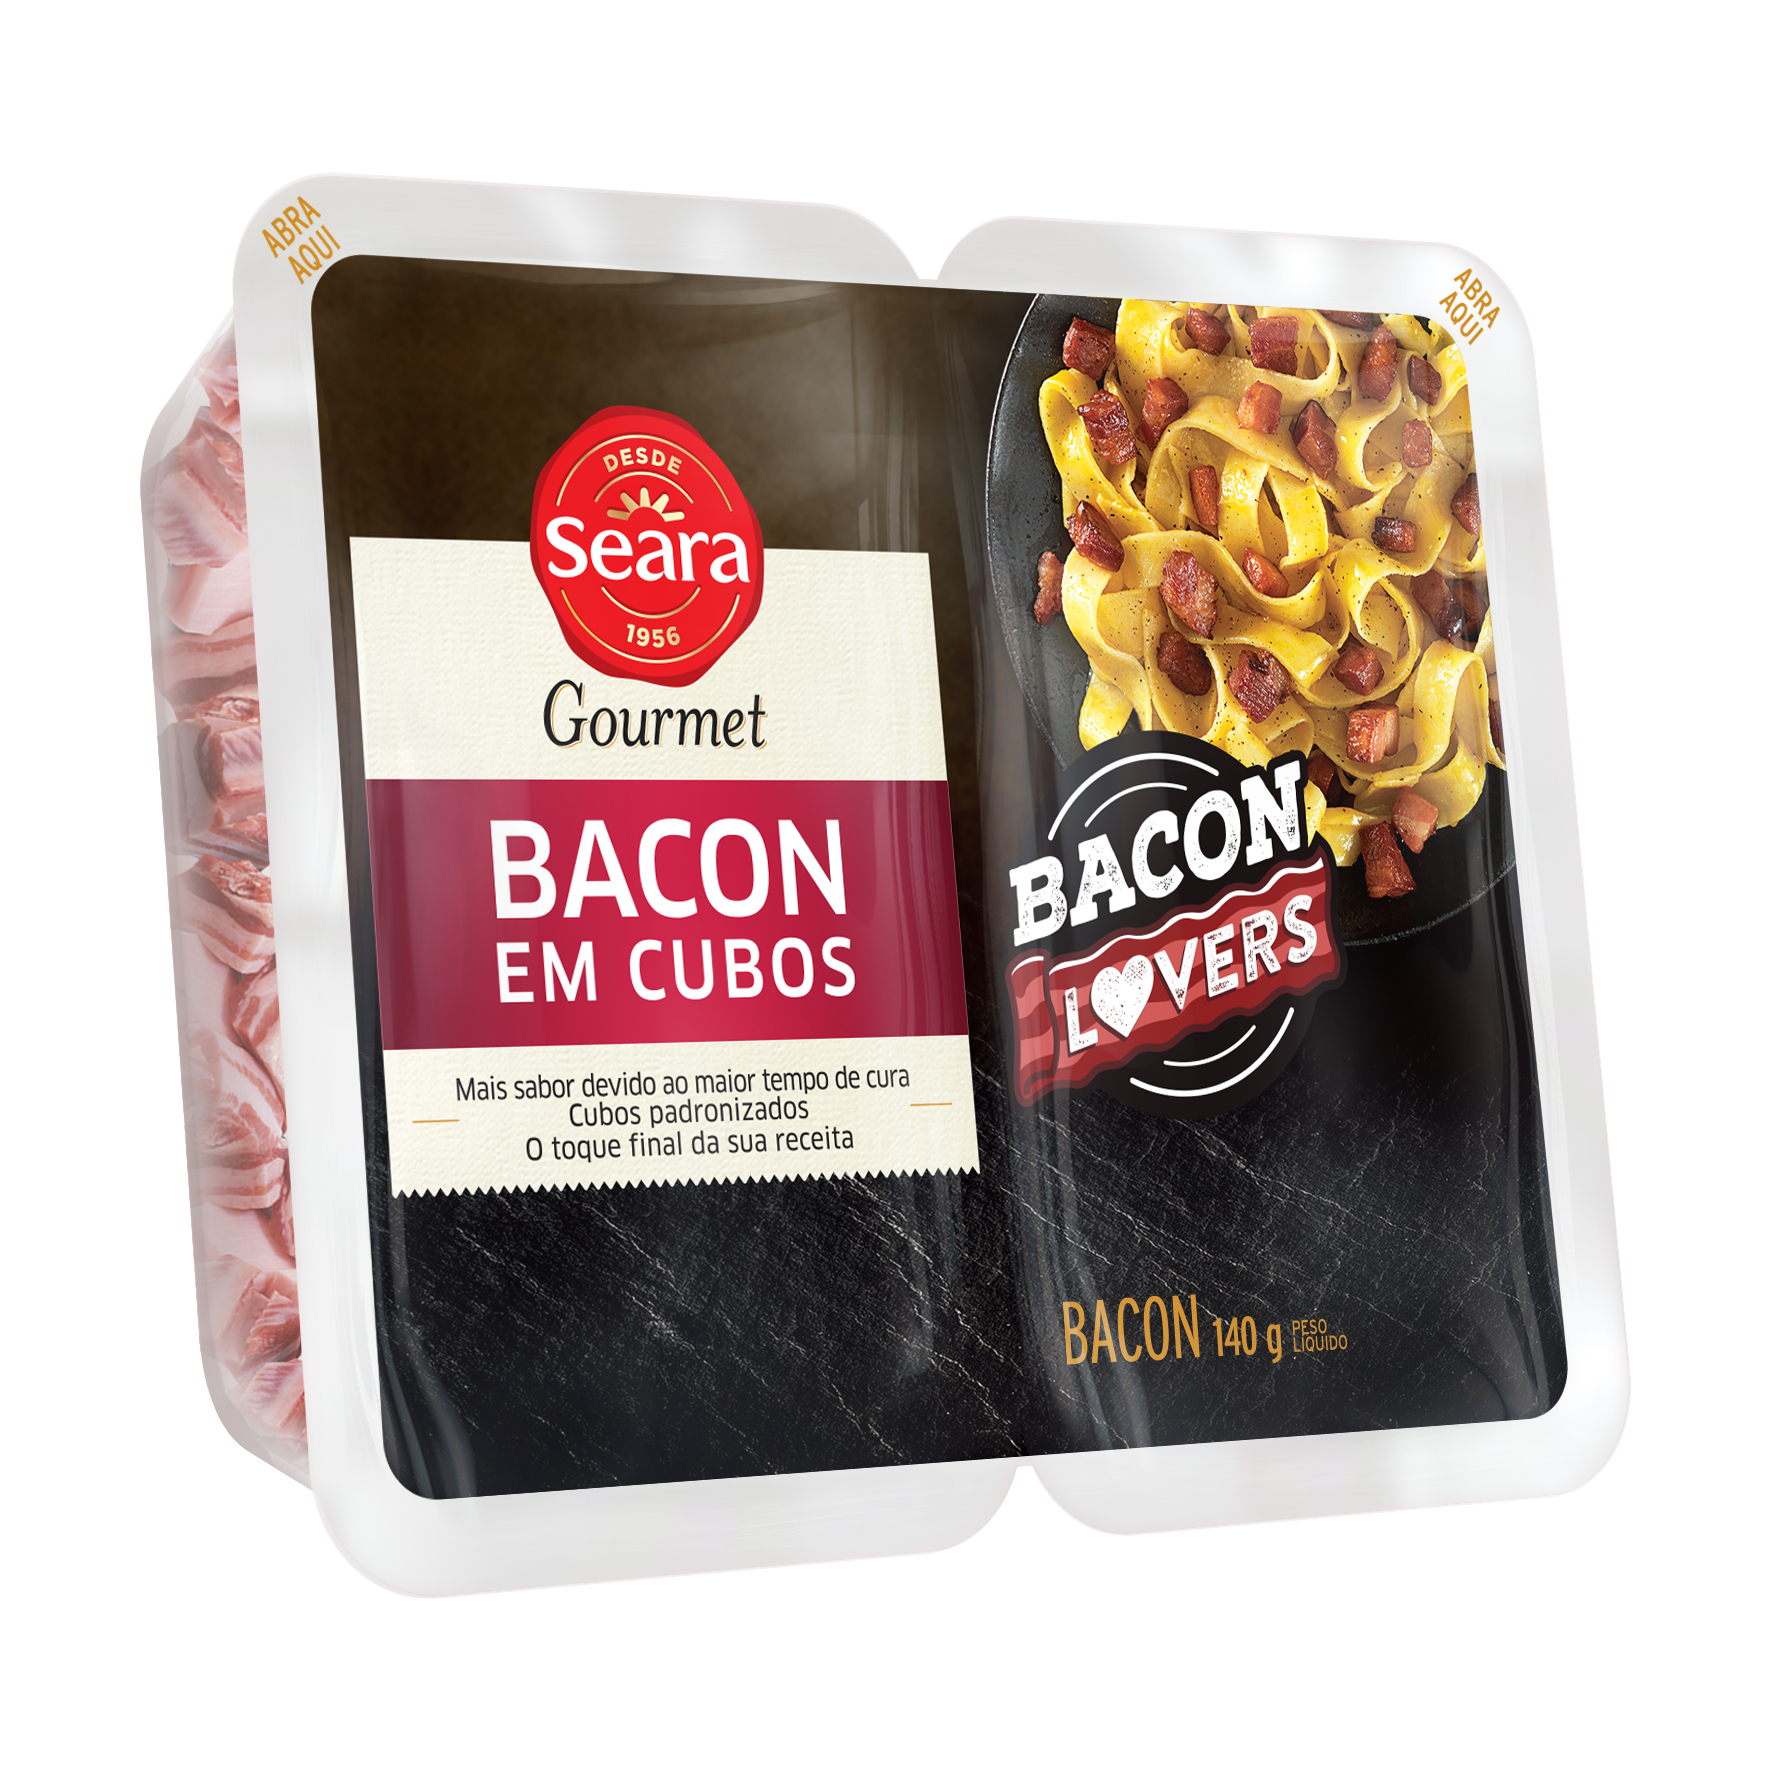 <span style = 'font-size:120%; font-weight: bold;'>BaconLovers Seara</span><br>A Seara Alimentos lançou a maior linha de bacon de sua história, apresentando o movimento “BaconLovers”, que visa desper...